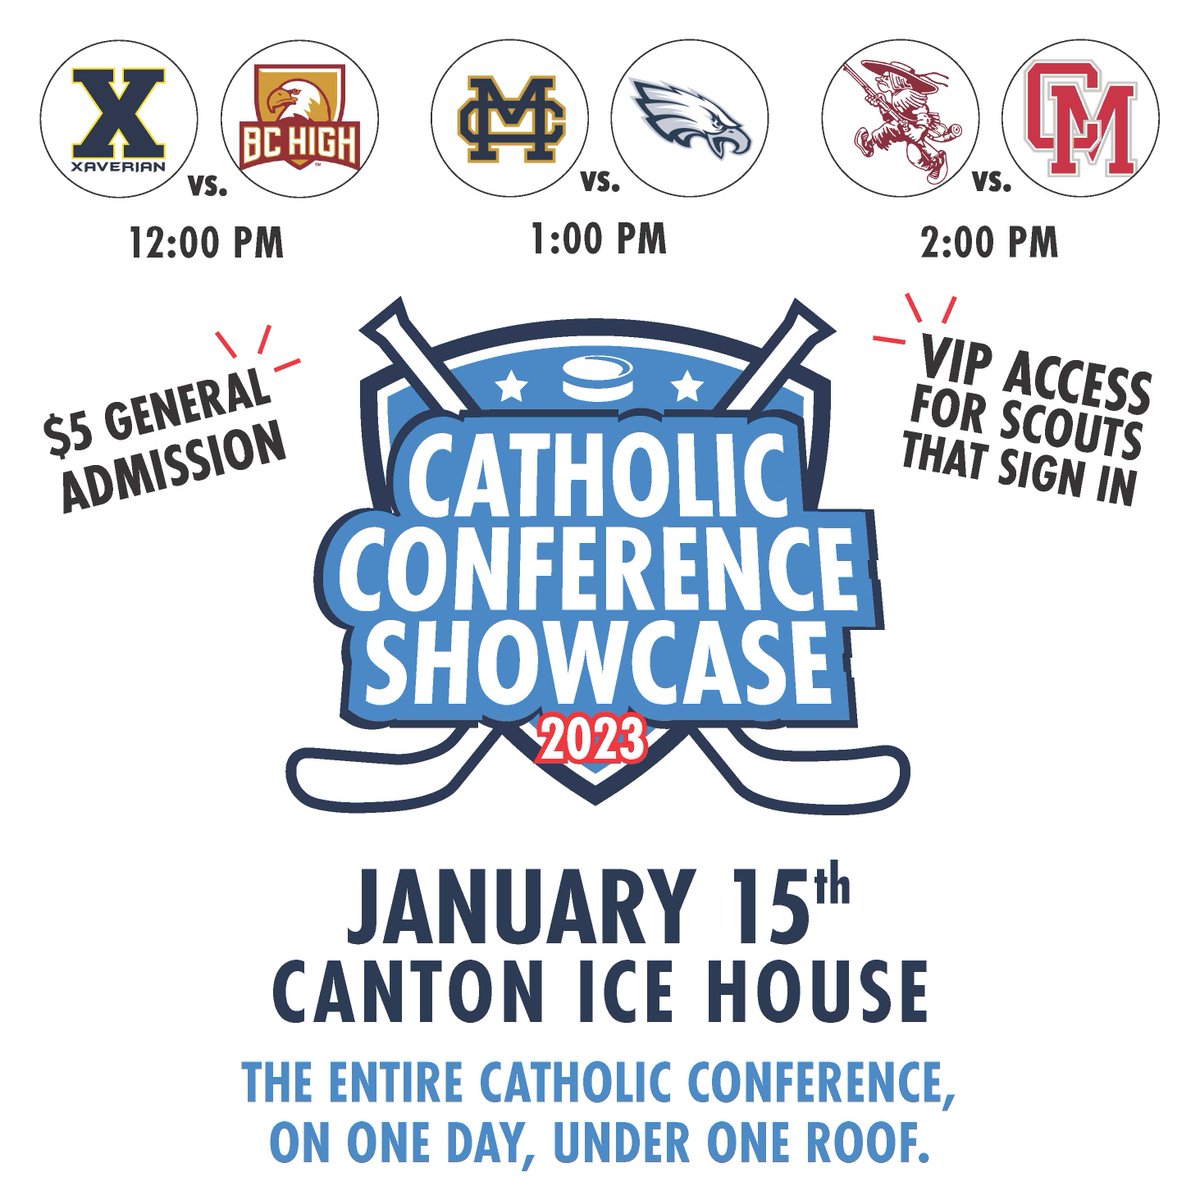 #CatholicConference SHOWCASE
SUNDAY, JANUARY 15th at the CANTON ICE HOUSE
vimeo.com/787651278/4cae…

@XaverianHockey @BCH_HOCKEY @CM_Hockey @MCLancersHockey @SJP_Hockey @SJSHockey @BostonHeraldHS @GlobeSchools @HNIBonline @MassNZ @MHLbbiglive @MassHSHockey @tgsports